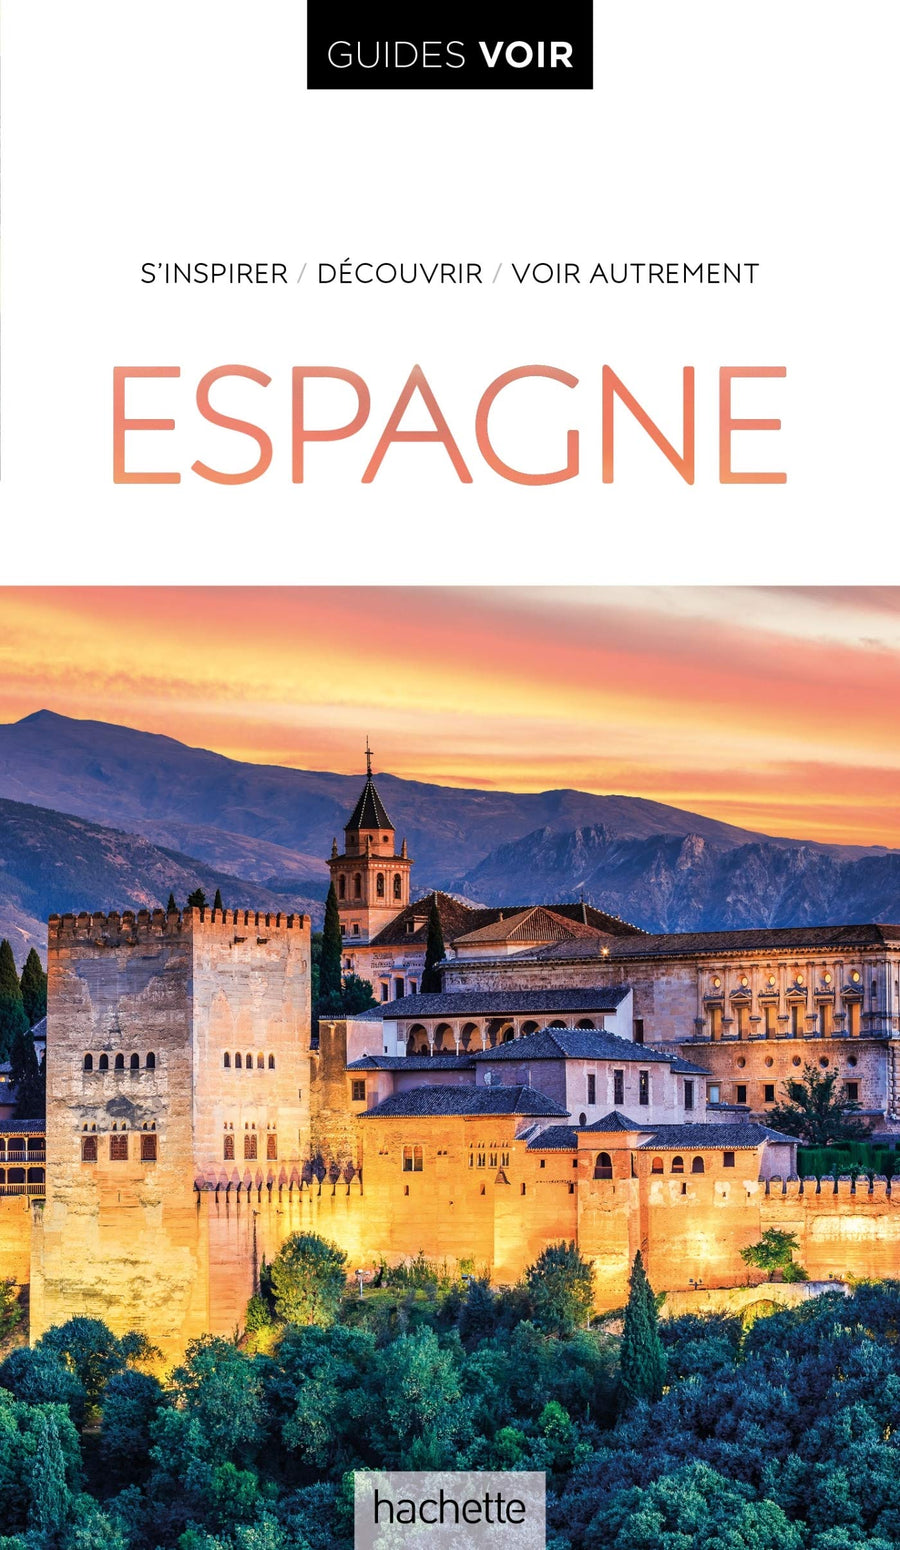 Guide de voyage - Espagne avec Baléares & Canaries - Édition 2021 | Guides Voir guide de voyage Guides Voir 